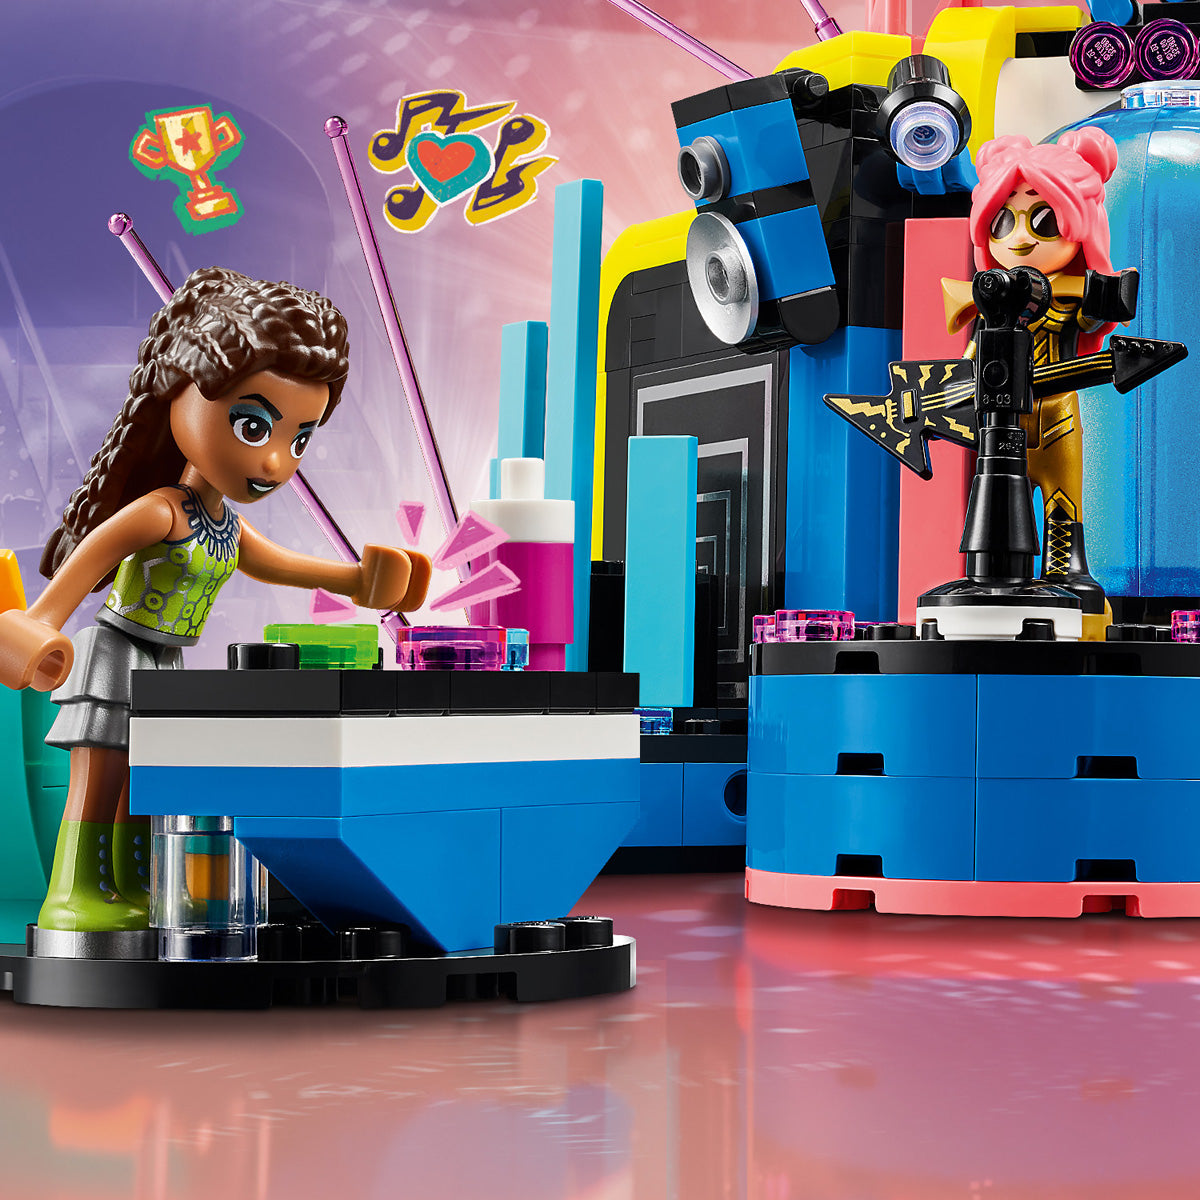 LEGO® Friends - Tekmovanje glasbenih talentov v Heartlake Cityju (42616)